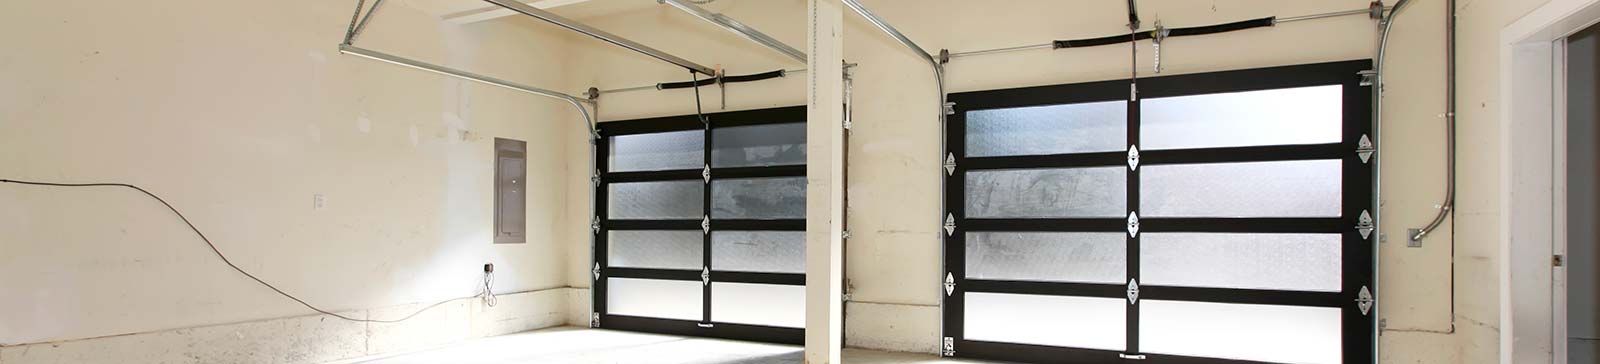 Garage Door Repair Expert Company In Pleasanton CA